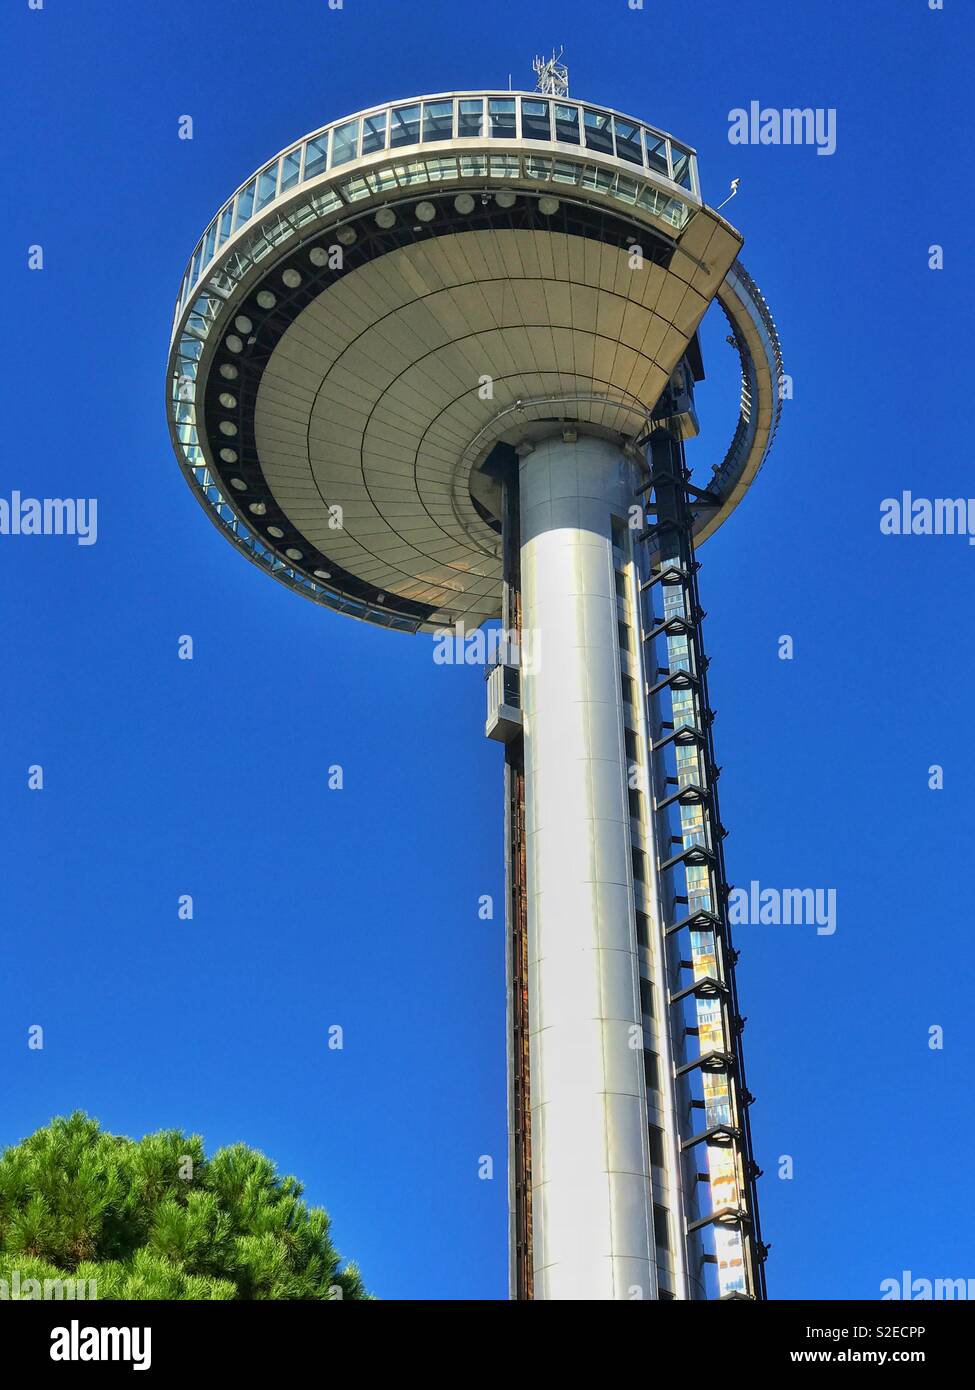 Osservando il Faro de Moncloa a Madrid, Spagna. Questo misuratore 92 elevata struttura consente delle vedute panoramiche di Madrid con la sua piattaforma di visualizzazione. A Madrid attrazione turistica. Foto © COLIN HOSKINS. Foto Stock